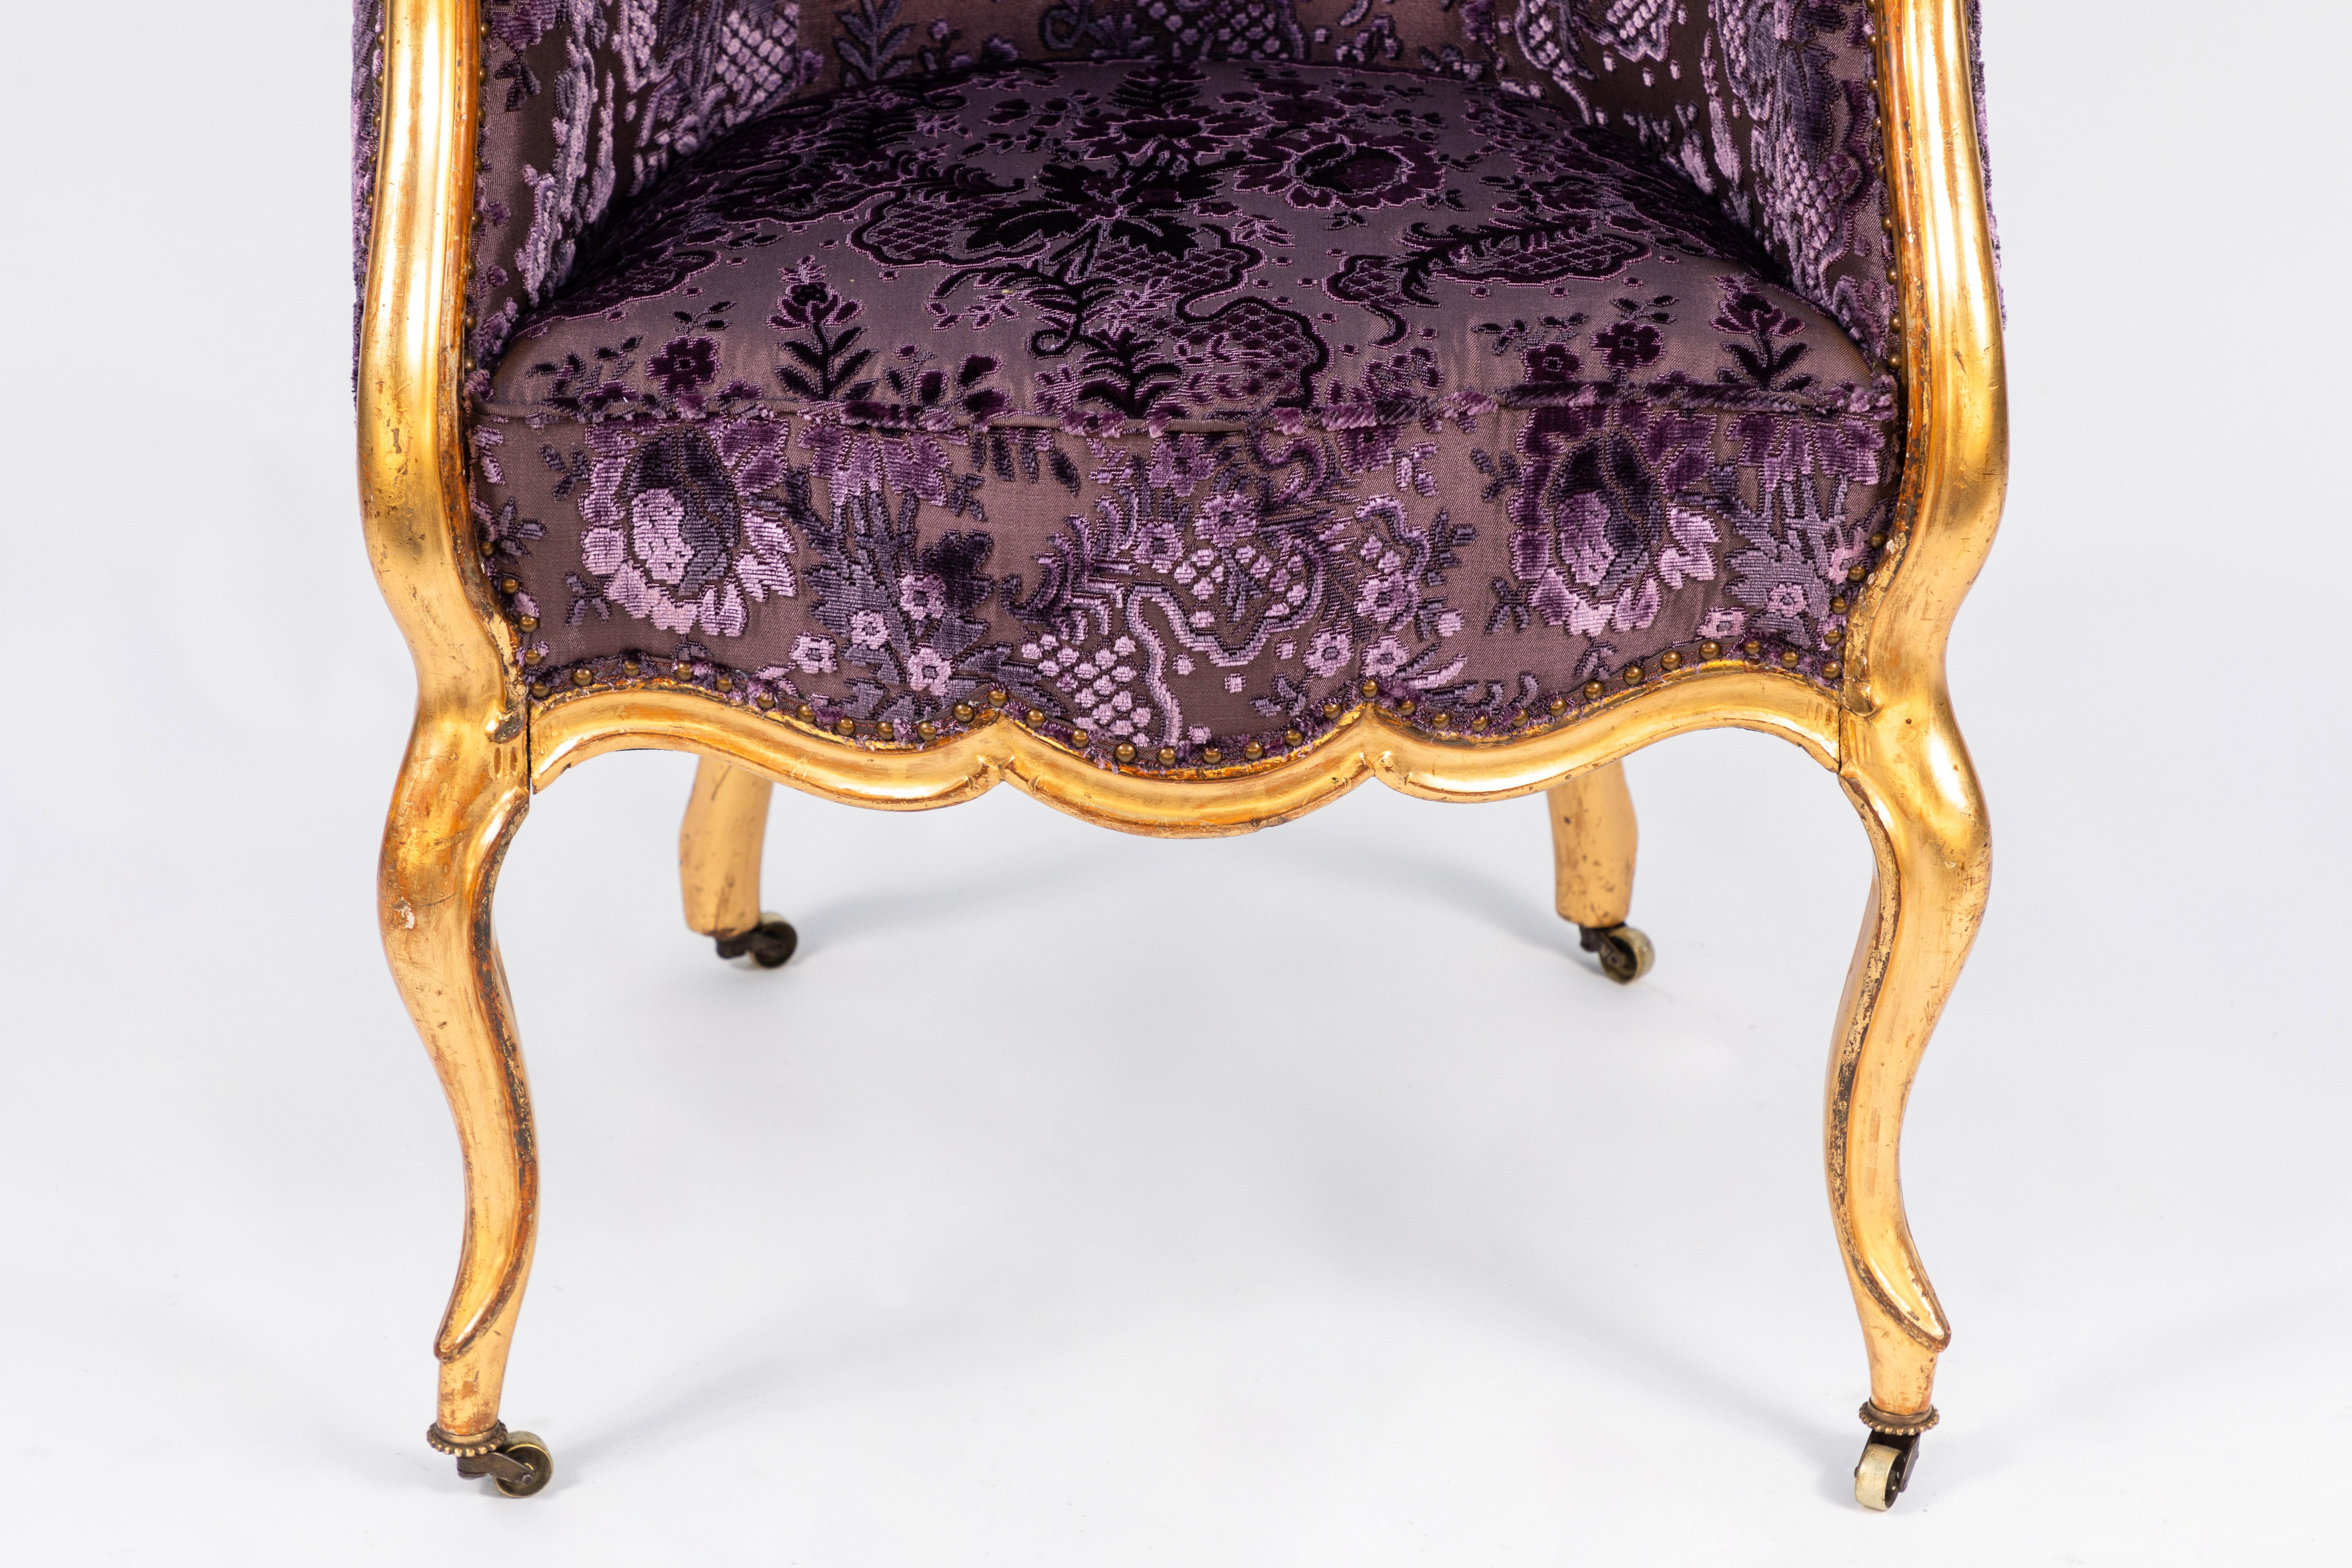 fauteuil simple en bois doré italien du 19ème siècle avec des détails finement sculptés. Nouvellement tapissé en velours violet brillant.